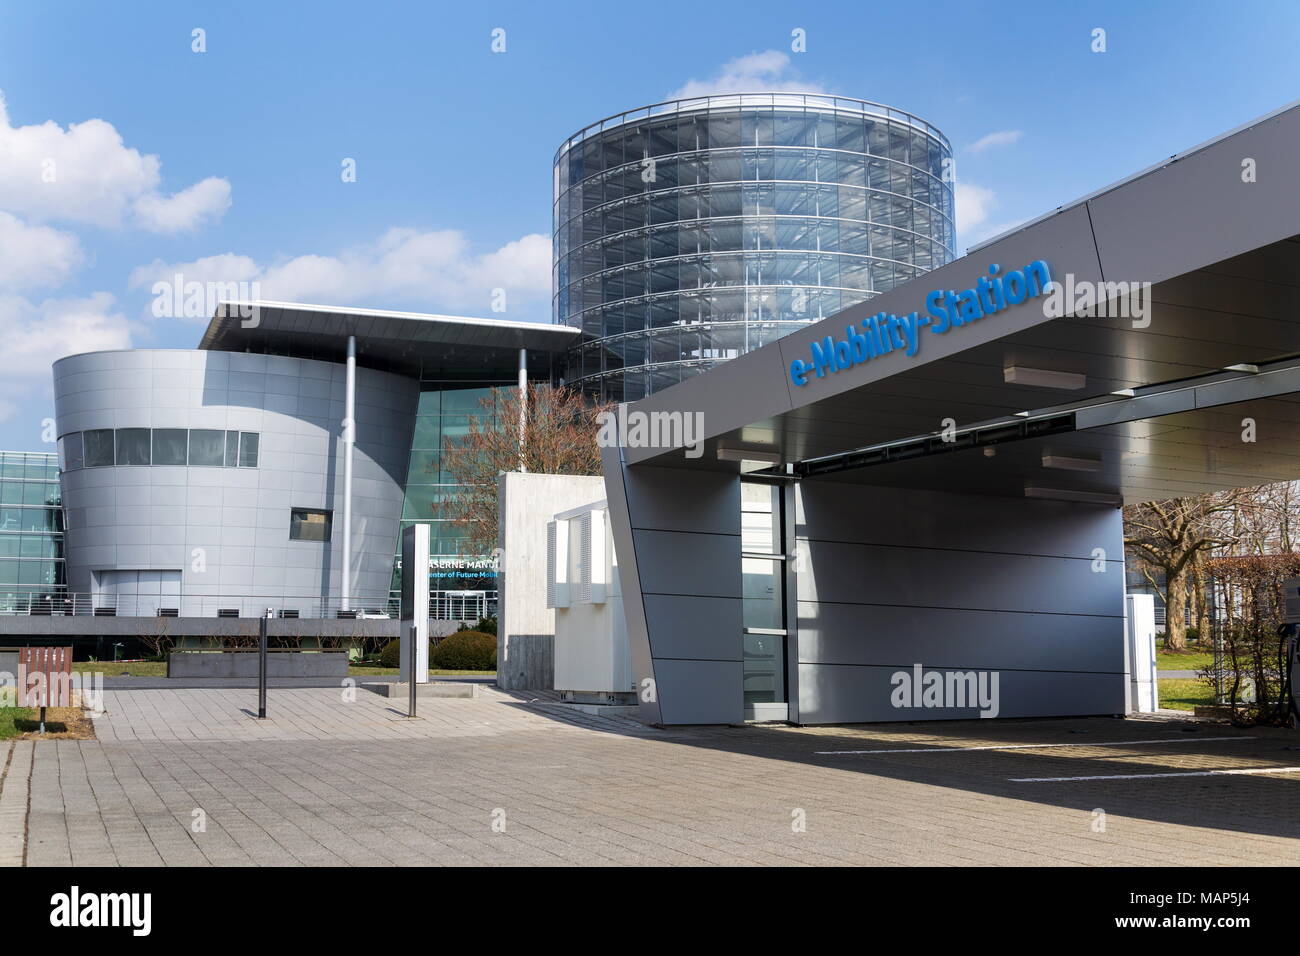 DRESDEN, Deutschland - 2. April 2018: Volkswagen E-Mobilität Ladestation vor dem Glaserne Manufaktur - transparente Fabrik Stockfoto